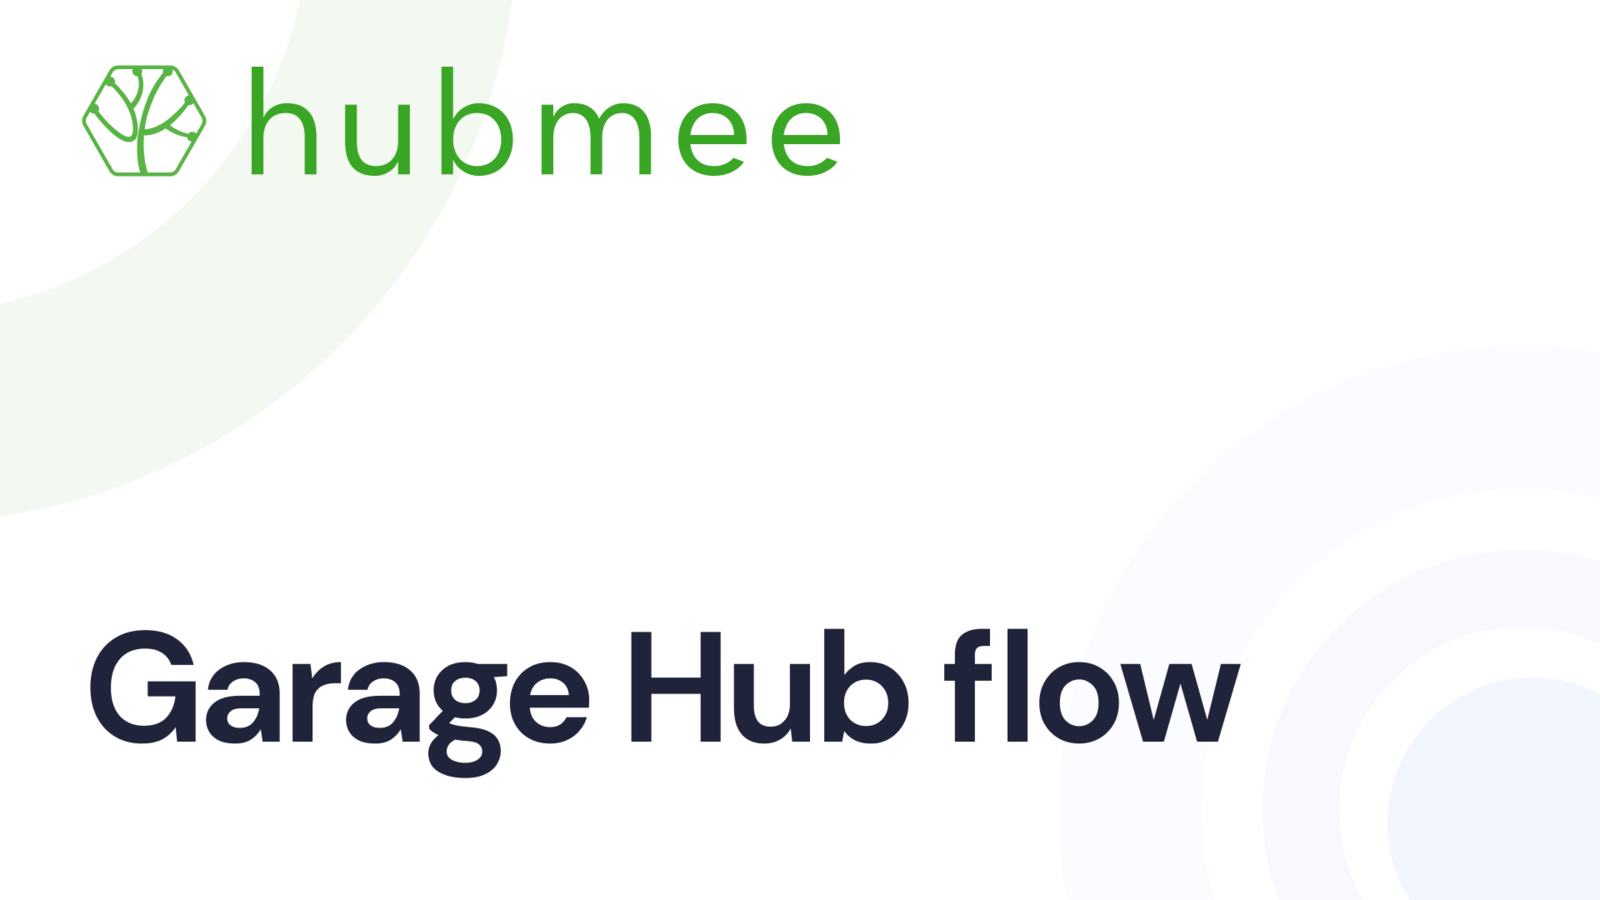 Garage Hub flow